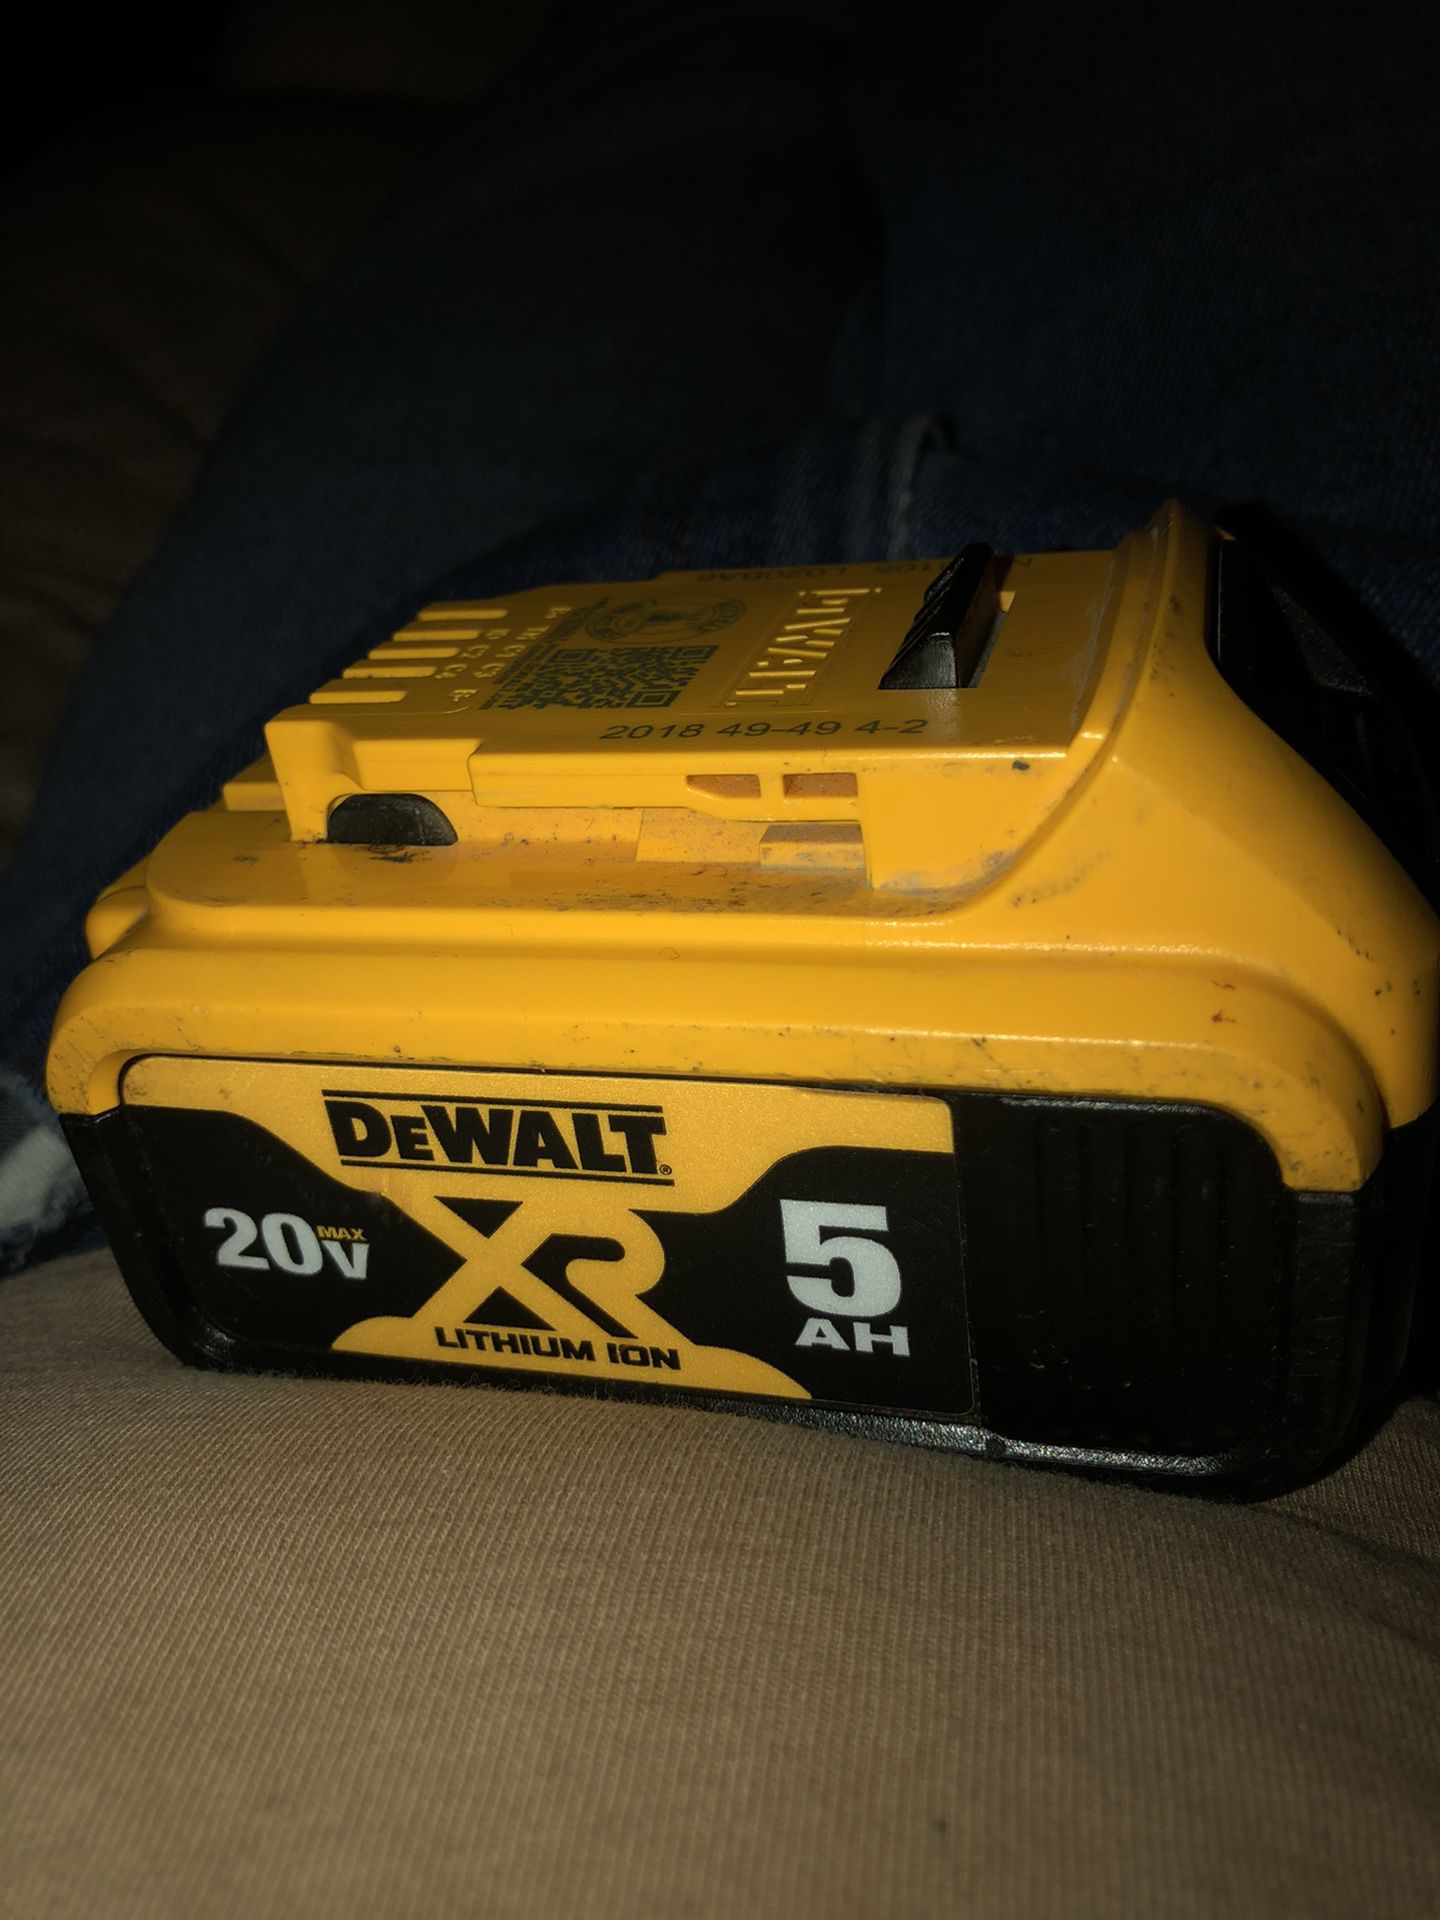 Dewalt battery 20 V XR 5A only